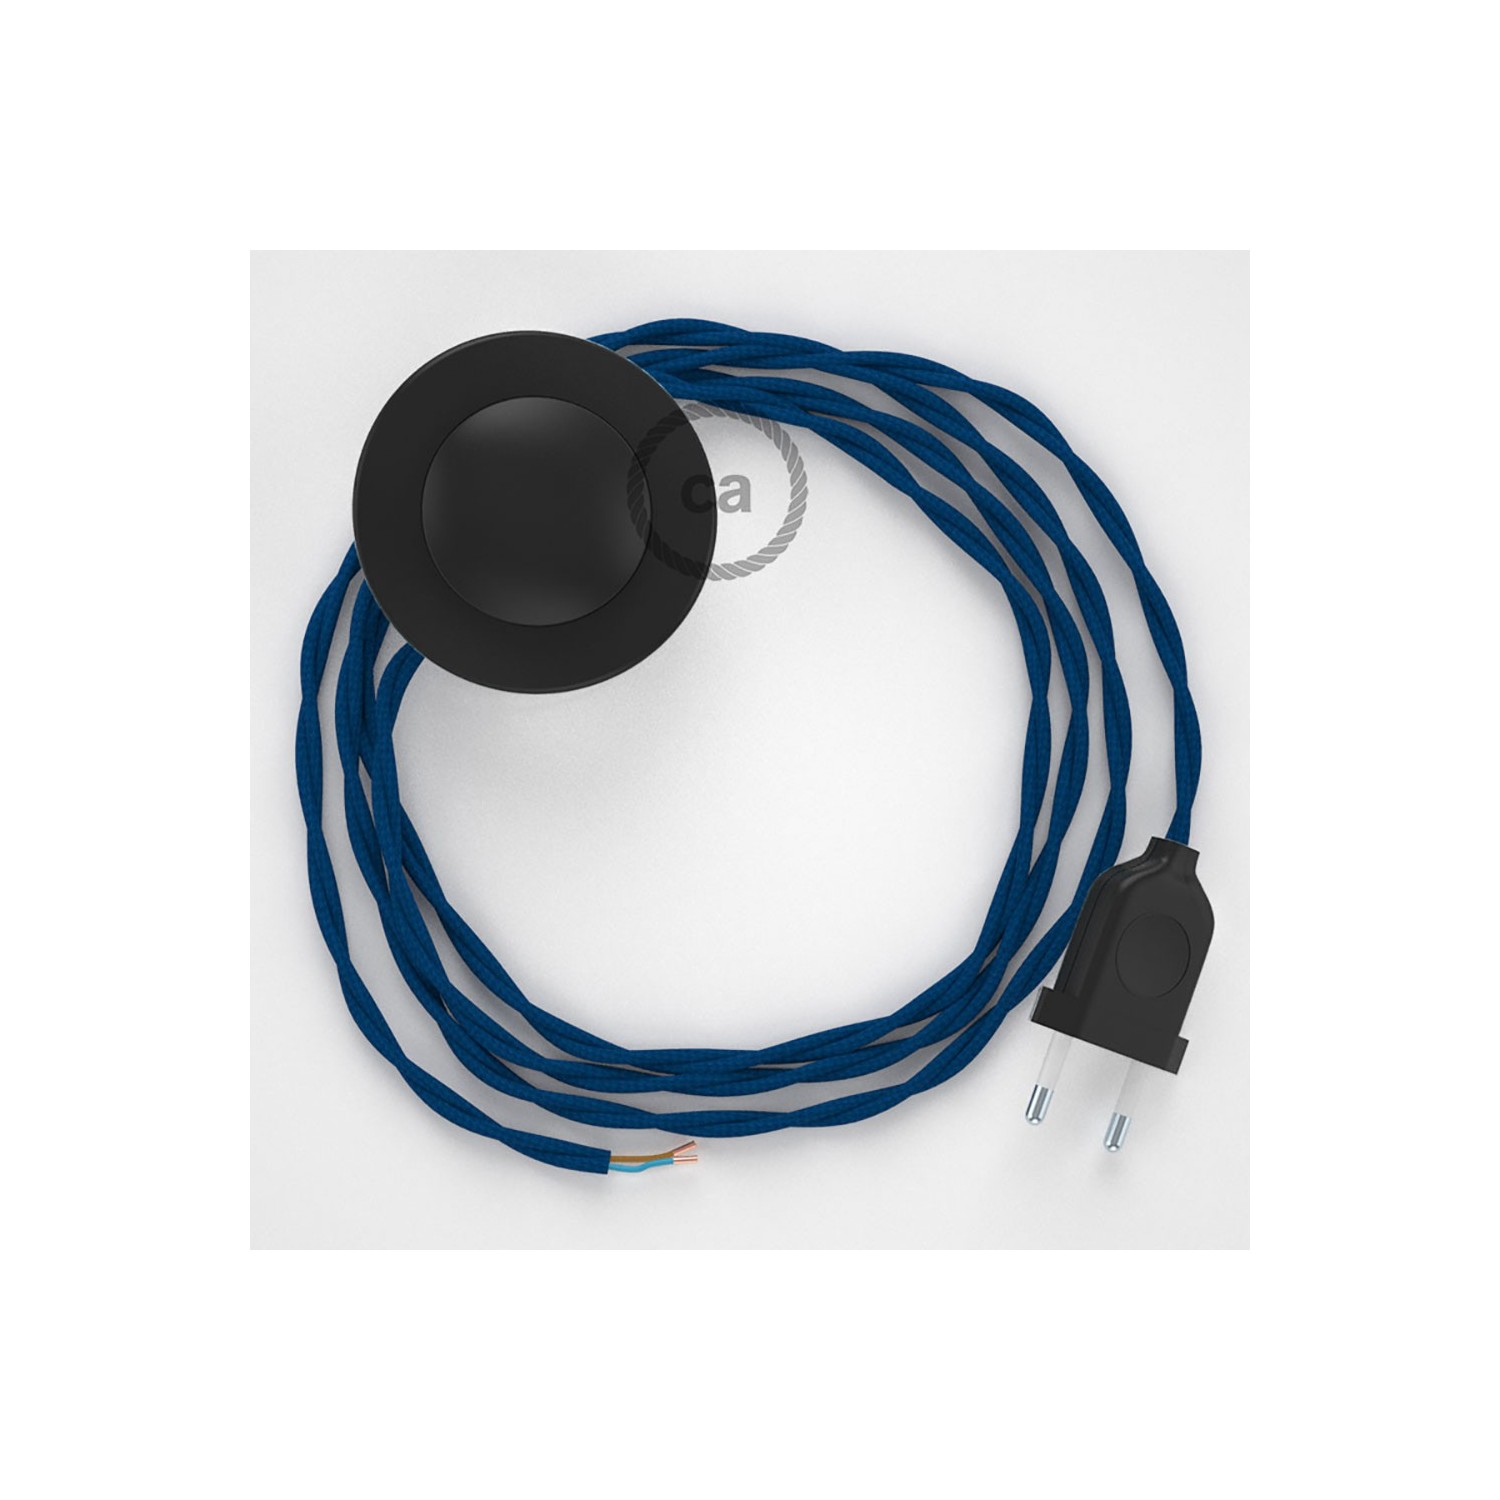 Strijkijzersnoer set TM12 blauw viscose 3 m. voor staande lamp met stekker en voetschakelaar.